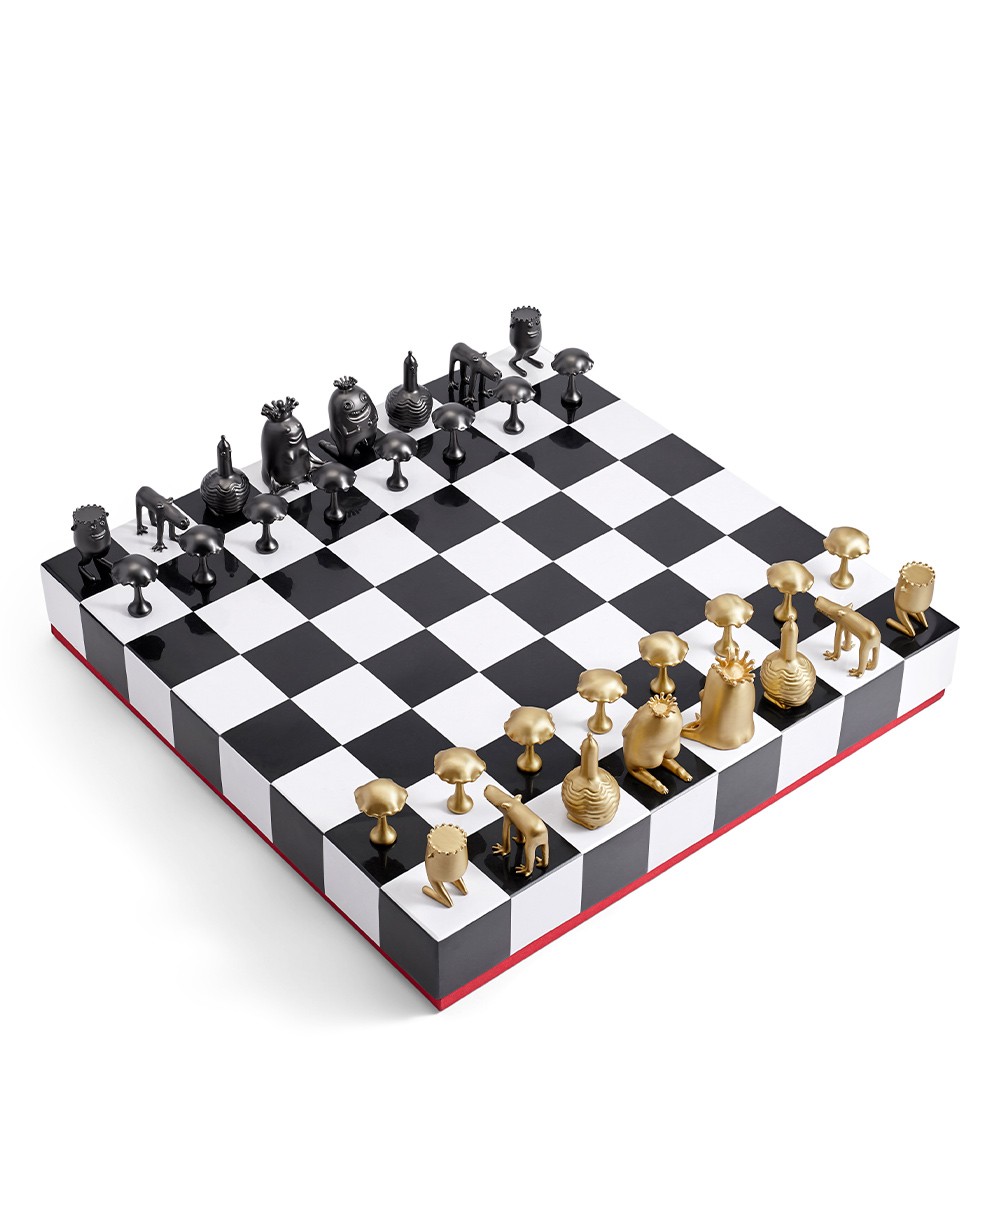 Haas Schach Set von L'Objet – schnell und einfach online bestellen.